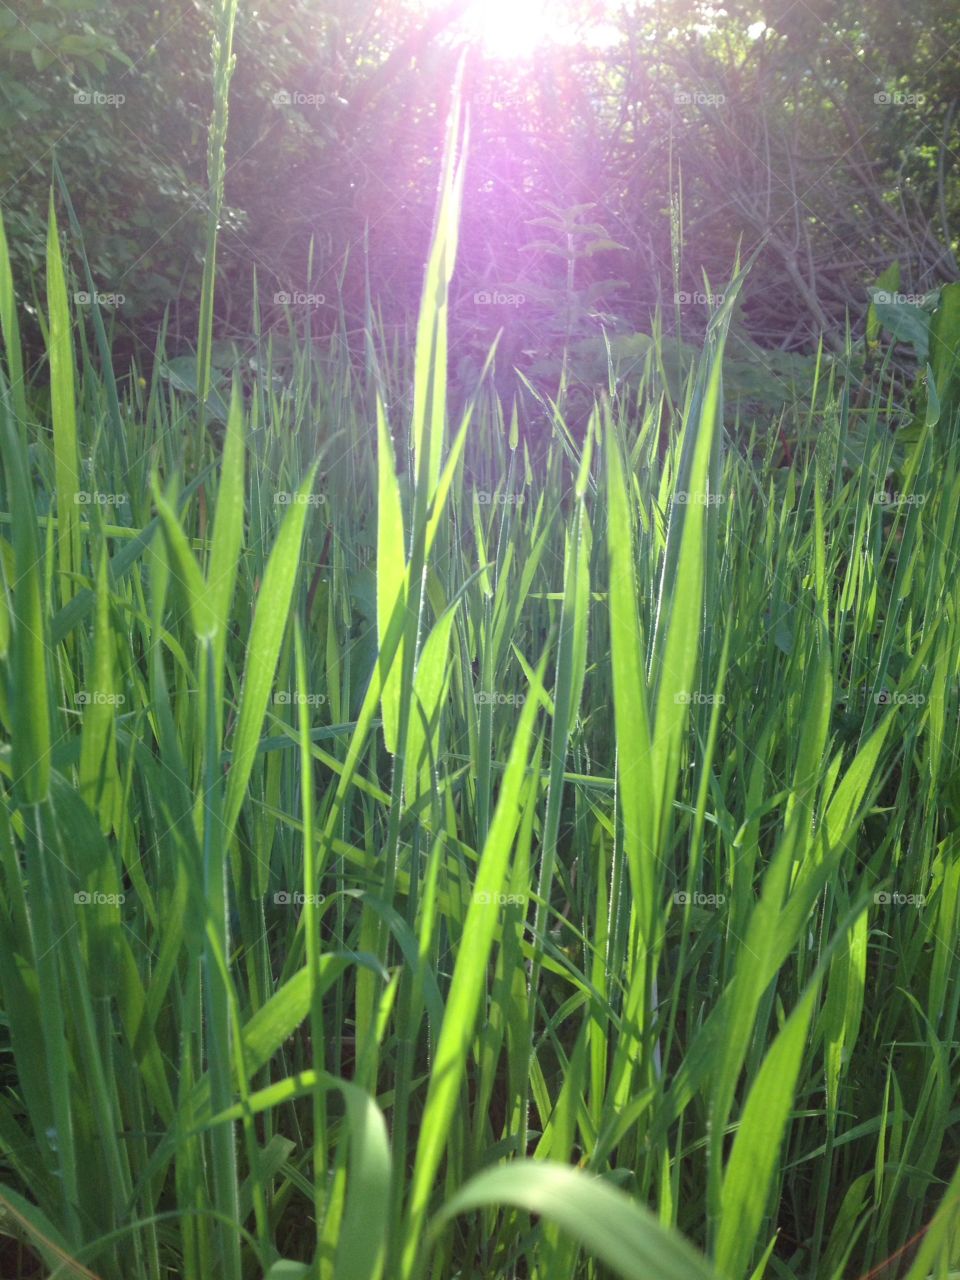 Grass. Sun shining through grass